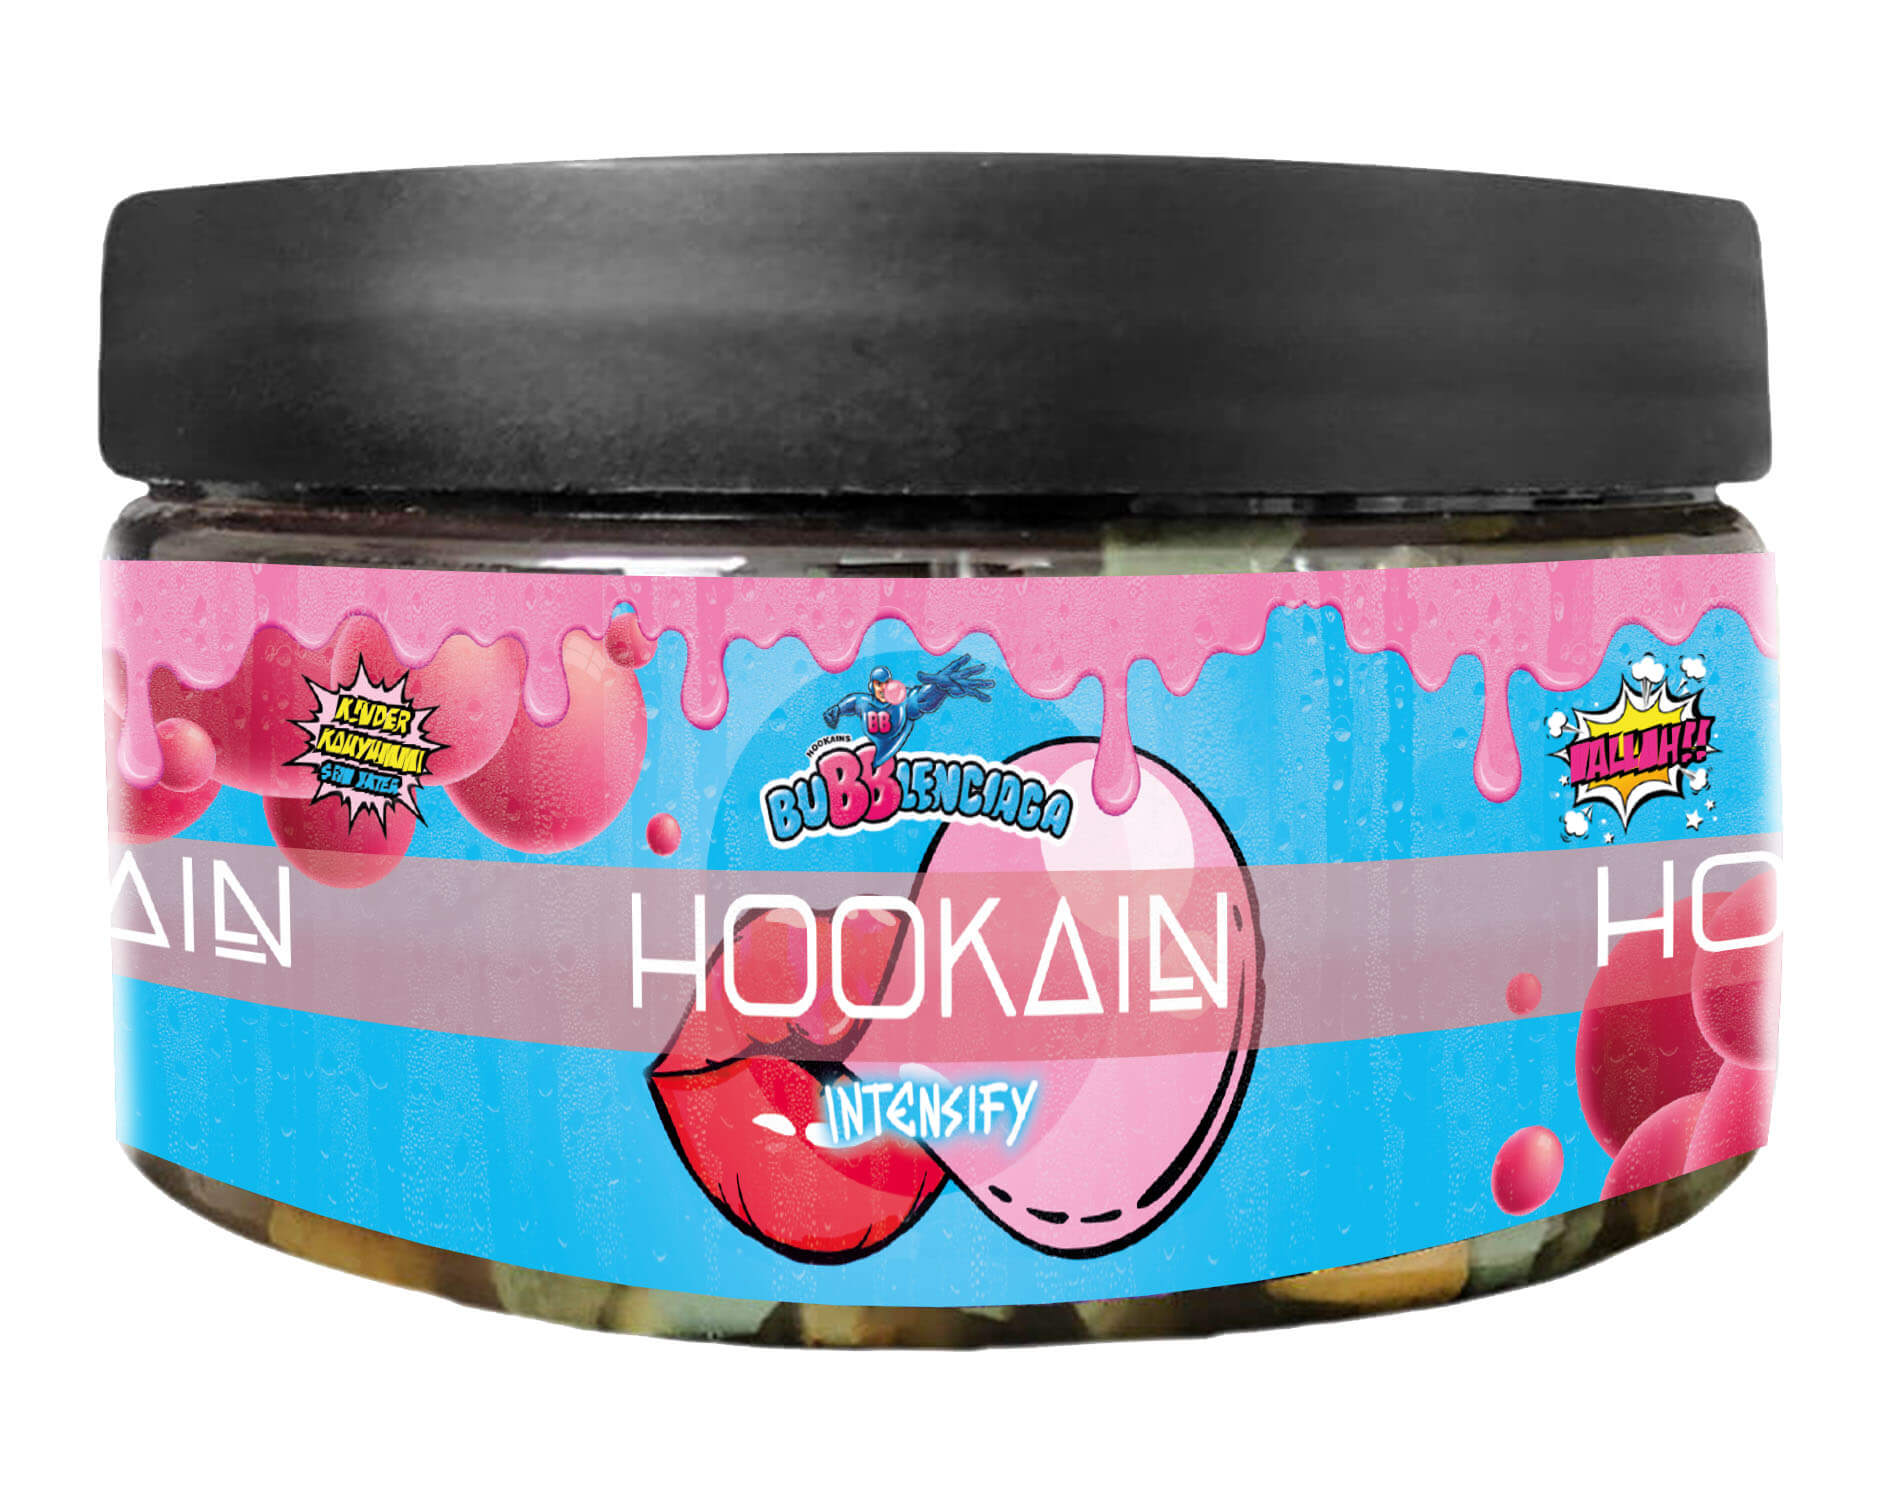 Hookain Dampfsteine 100g | Bubblenciago